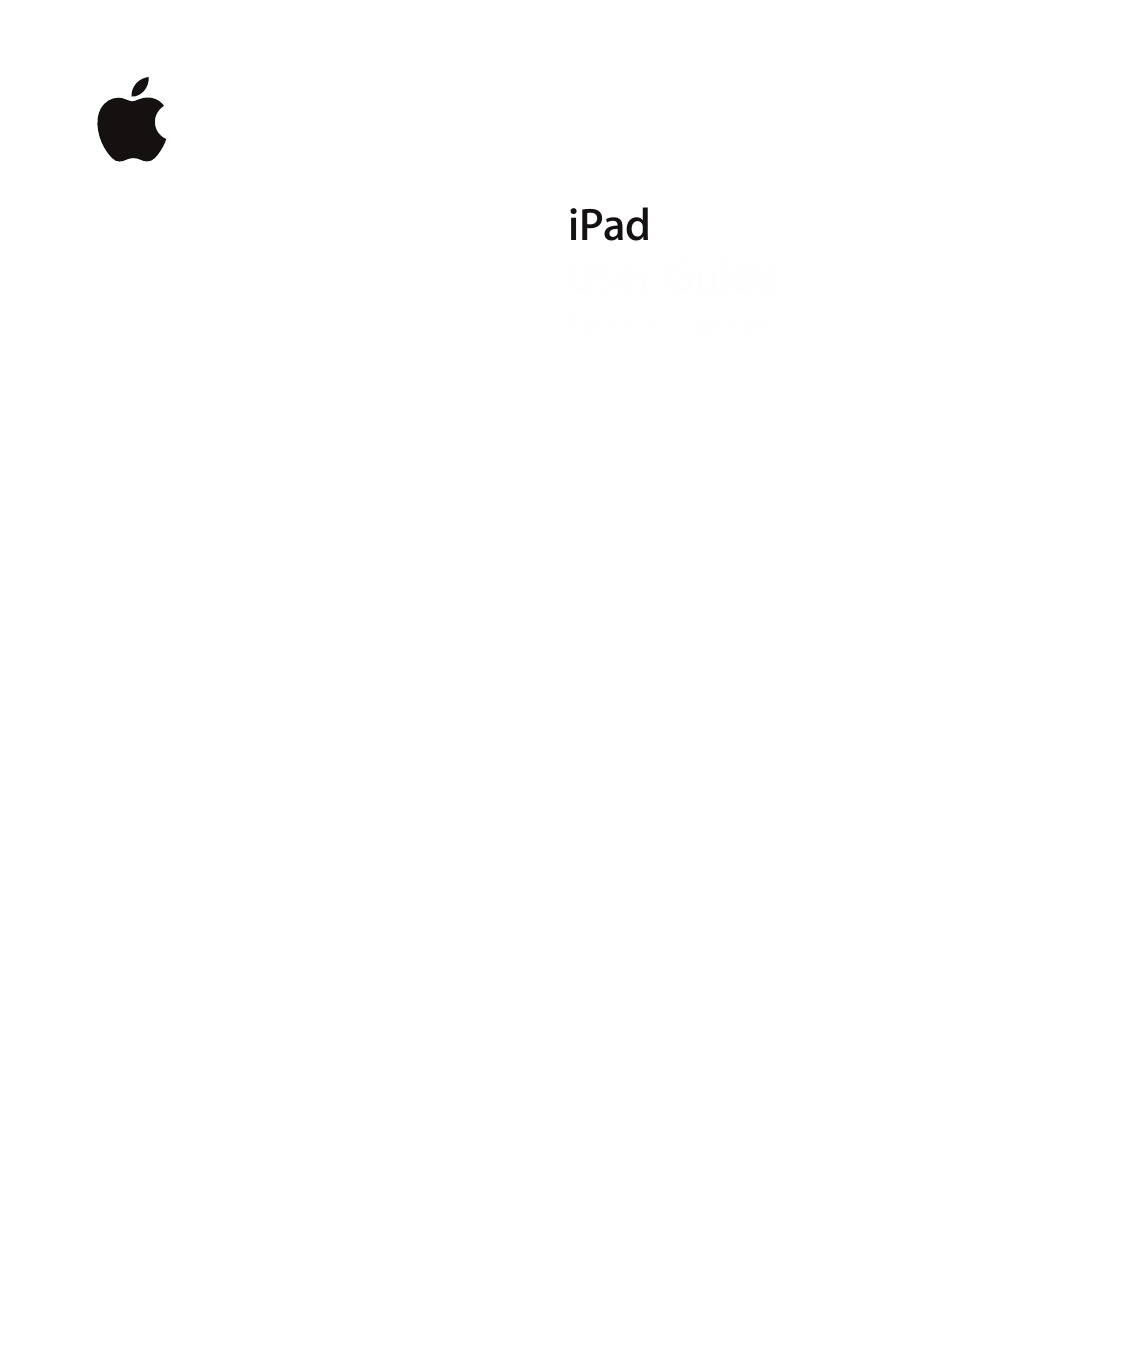 iPadUser GuideFor iOS 4.3 Software